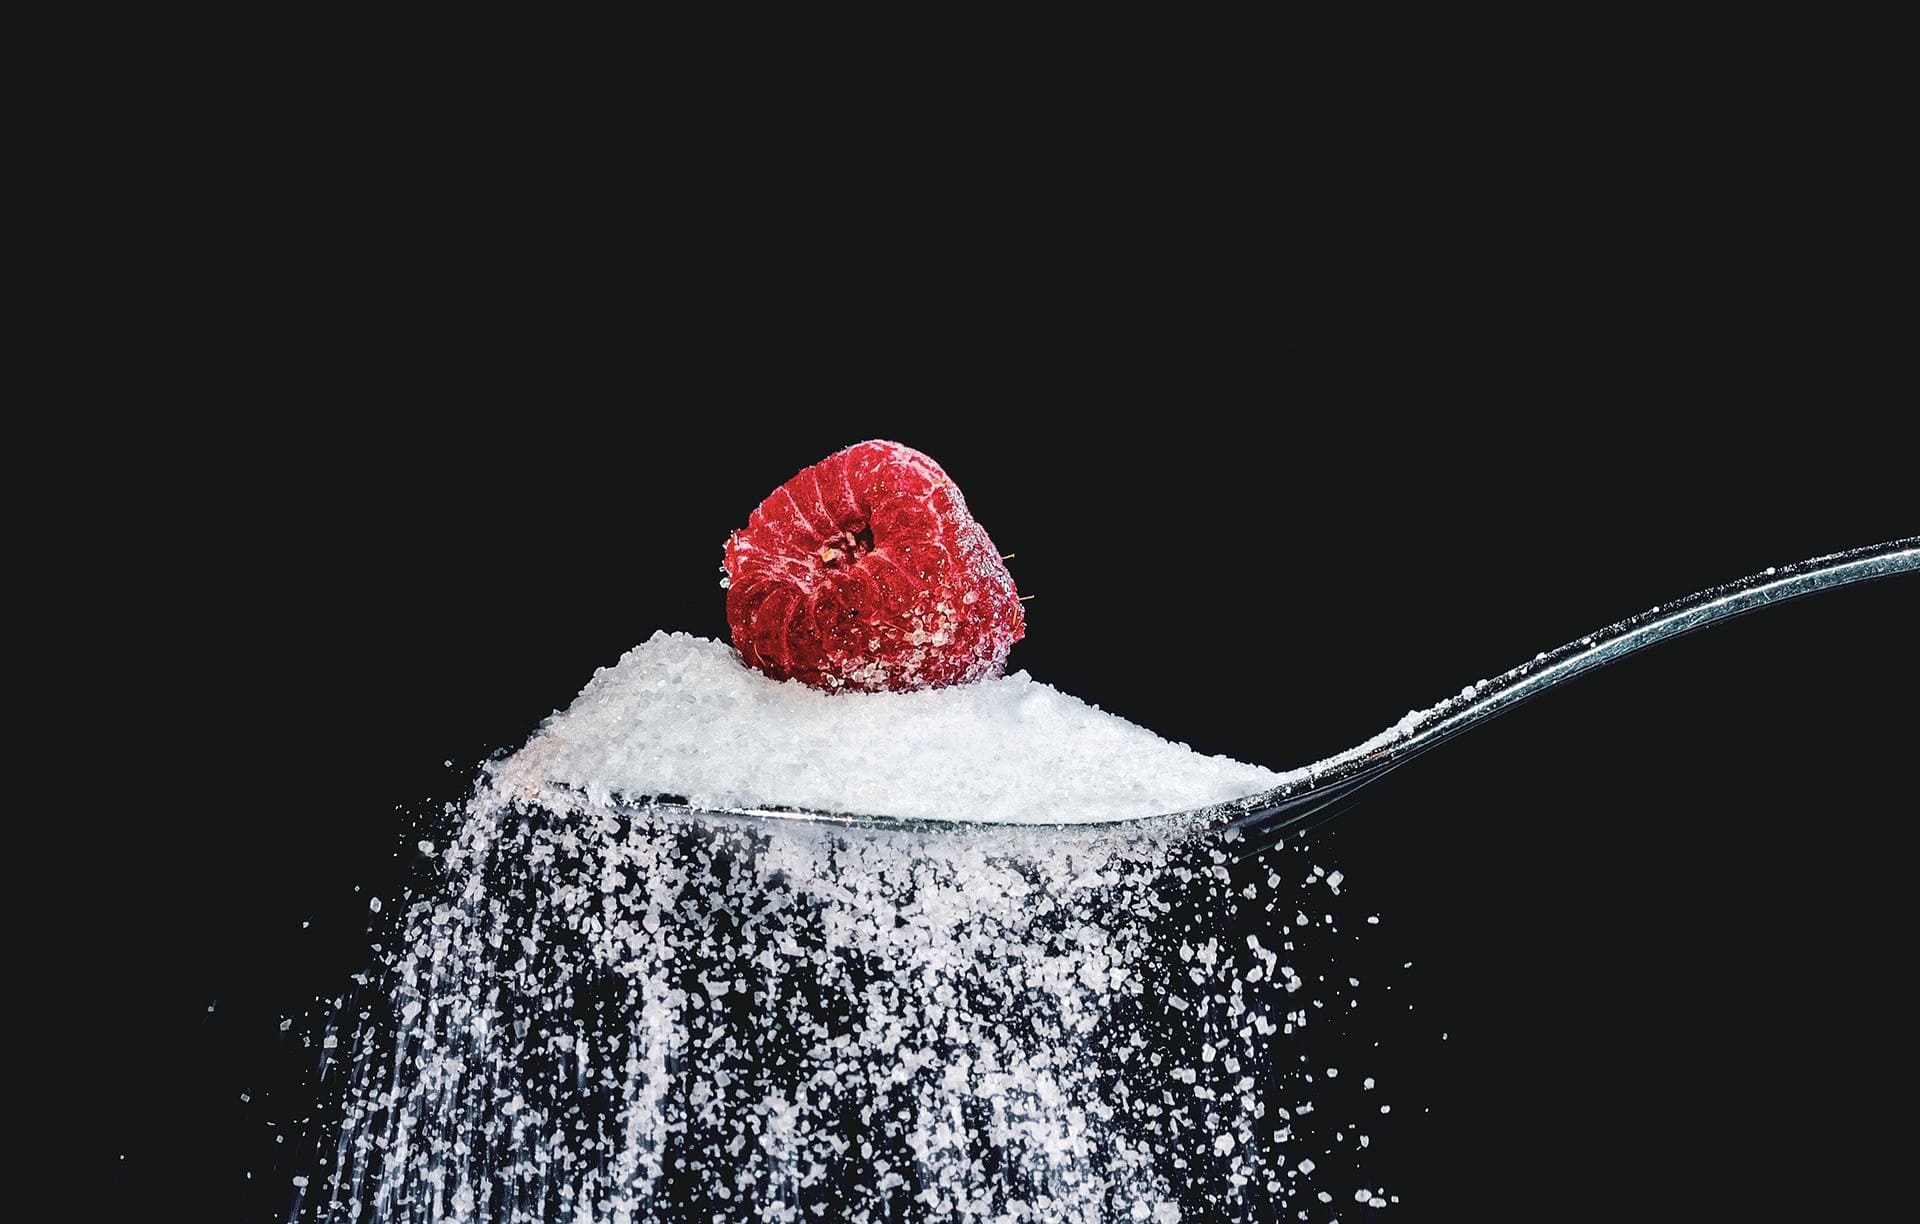 Reducing Your Sugar Intake